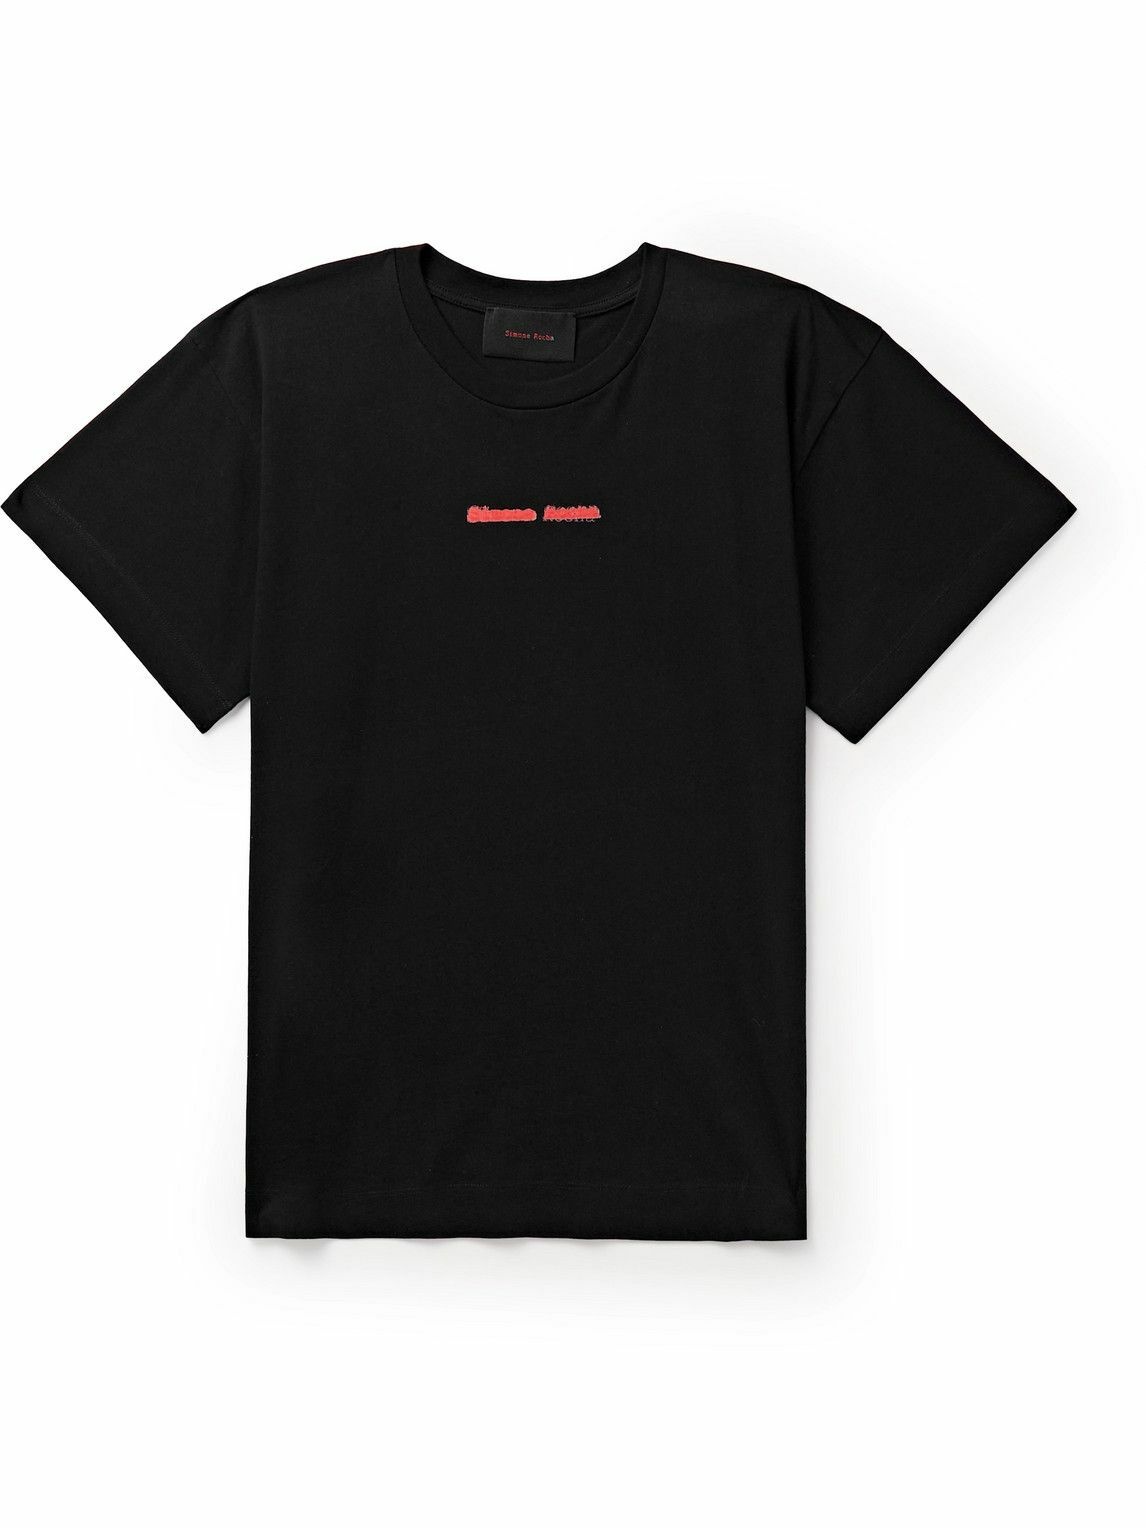 Simone Rocha - Logo-Print Cotton-Jersey T-Shirt - Black Simone Rocha